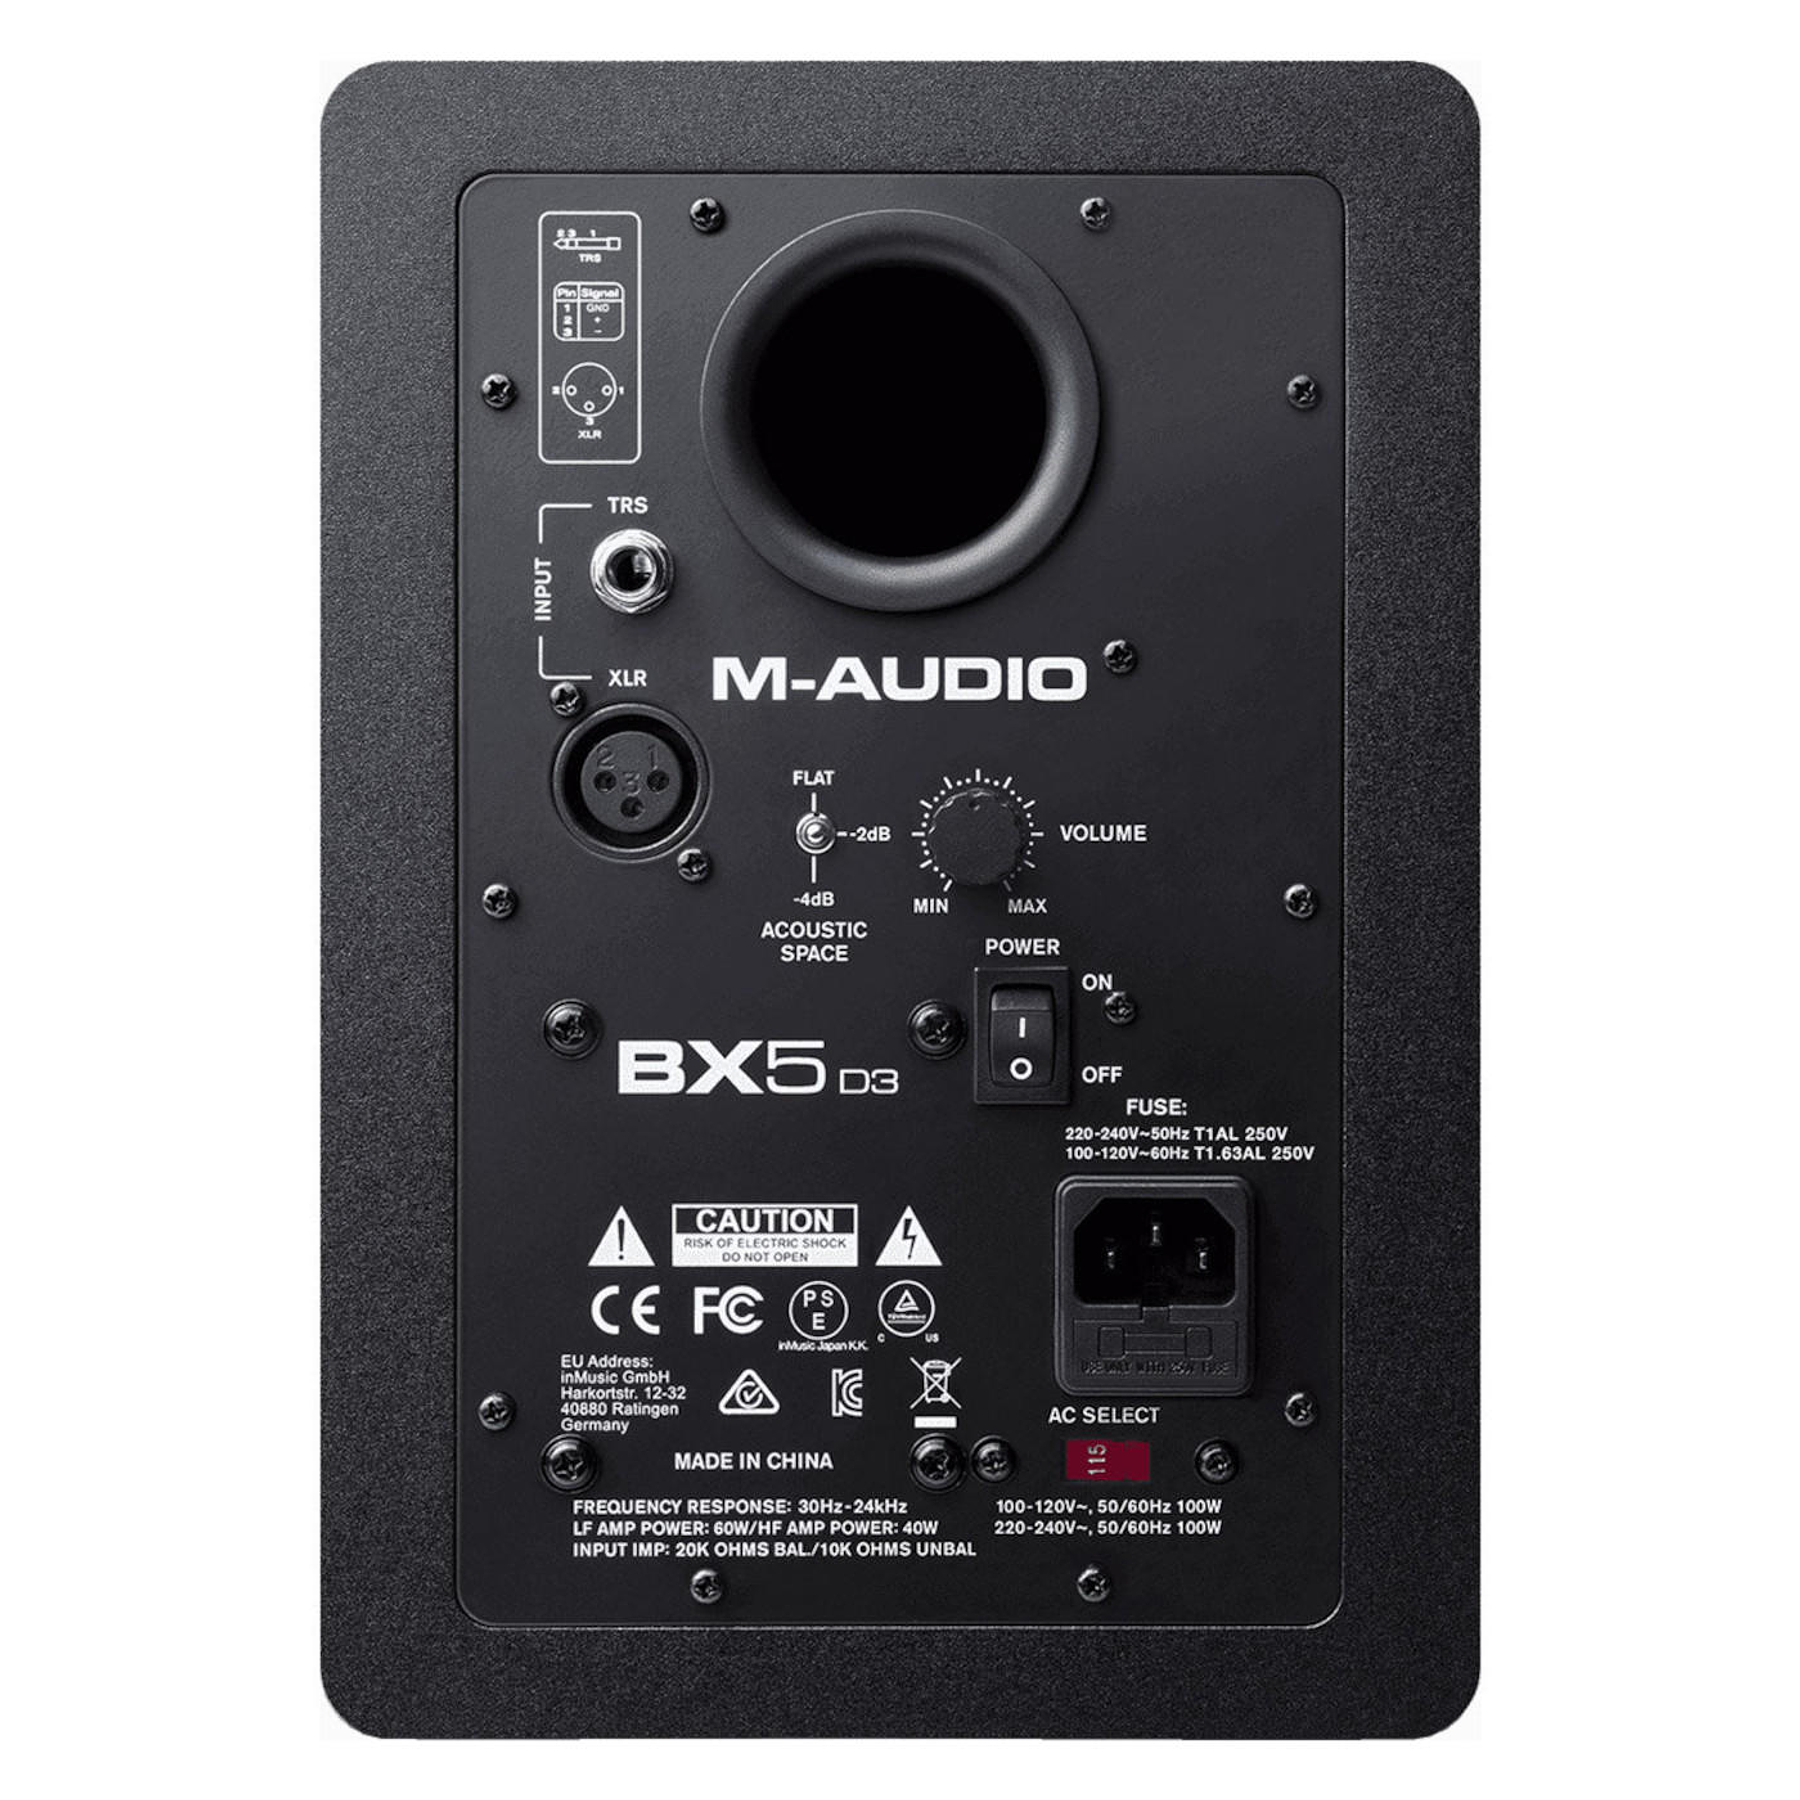 Monitor de Estudio M-Audio BX5 D3